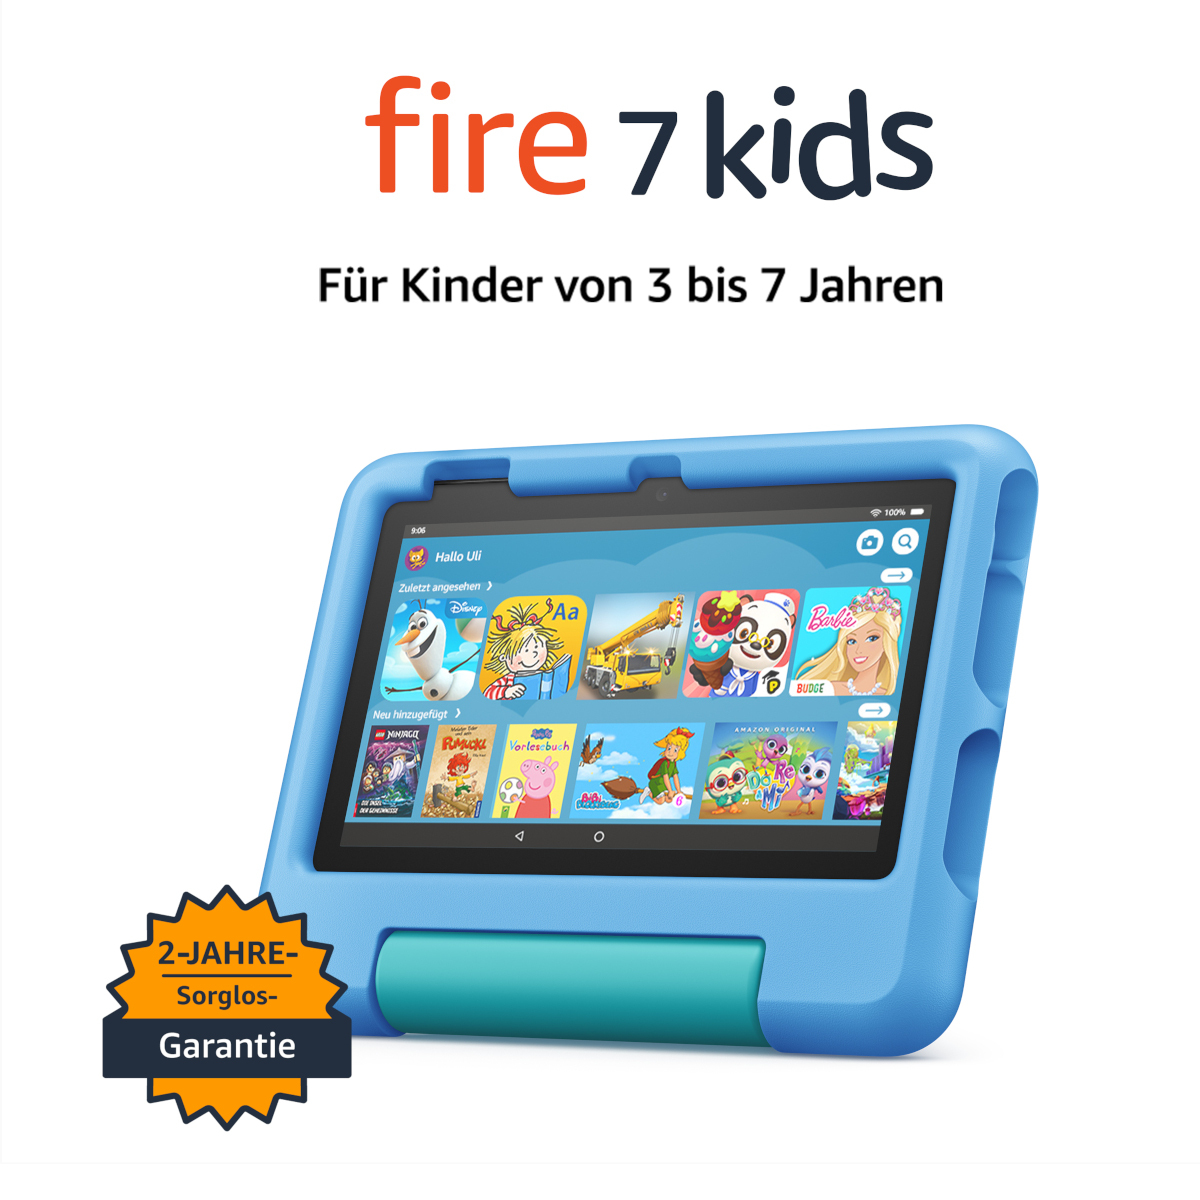 Fire 7 Kids-Tablet, 7-Zoll-Display, 16 GB, blau für Kinder von 3 bis 7 Jahren von Amazon